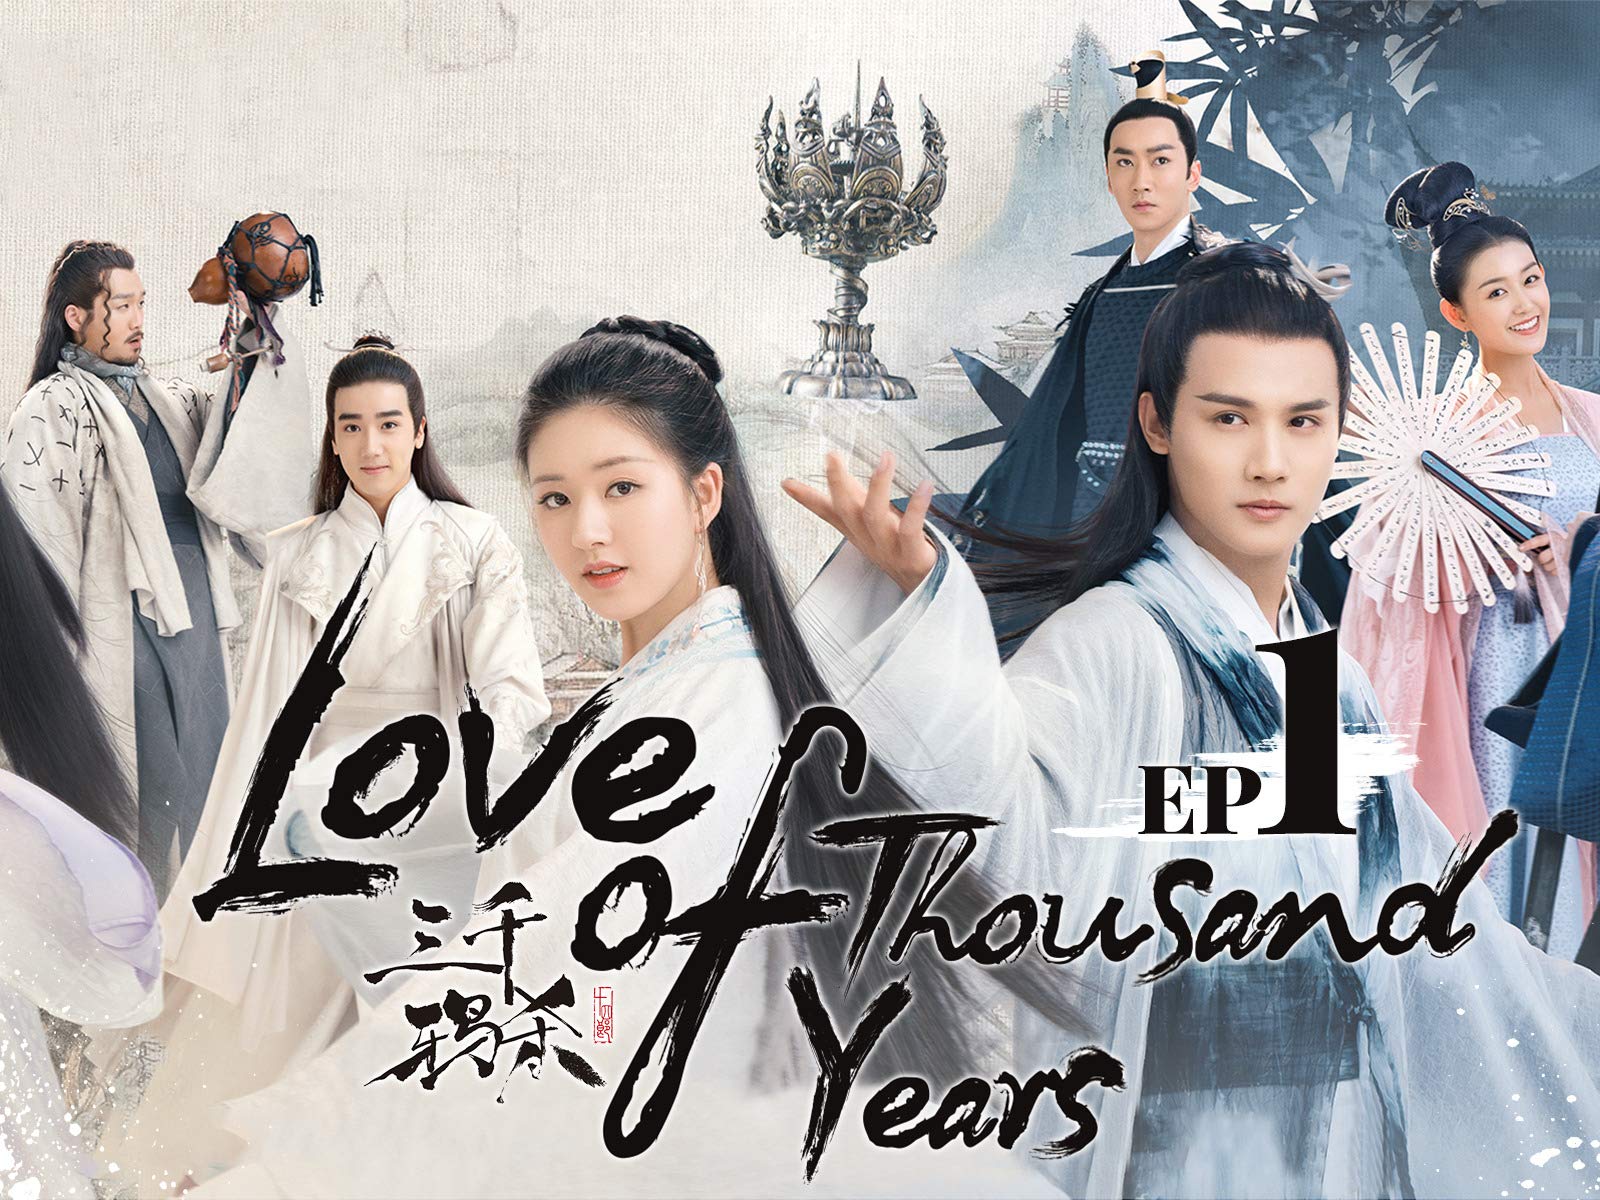 ดูซีรี่ย์จีน Love of Thousand Years (2020) ลิขิตรัก3000ปี พากย์ไทย